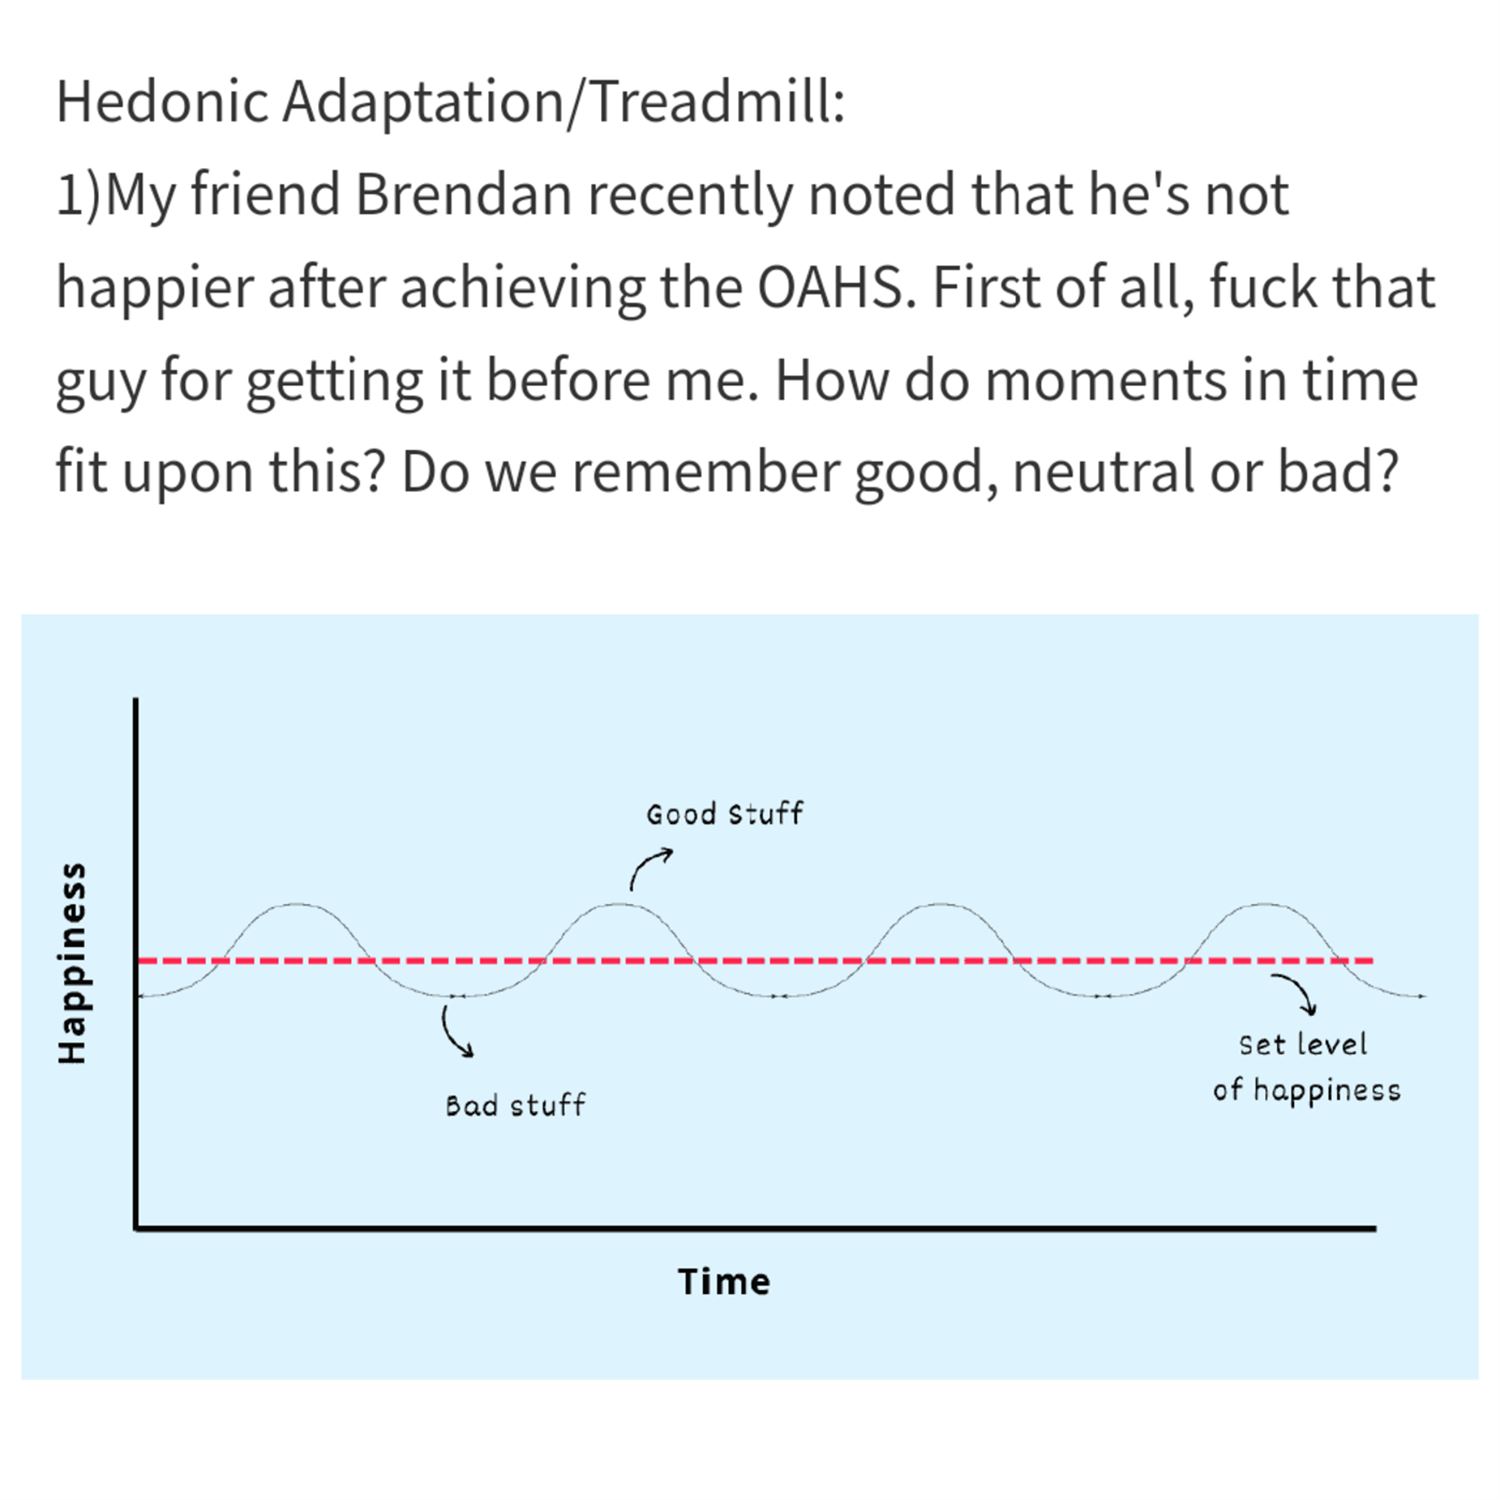 Hedonic treadmill/adaptation